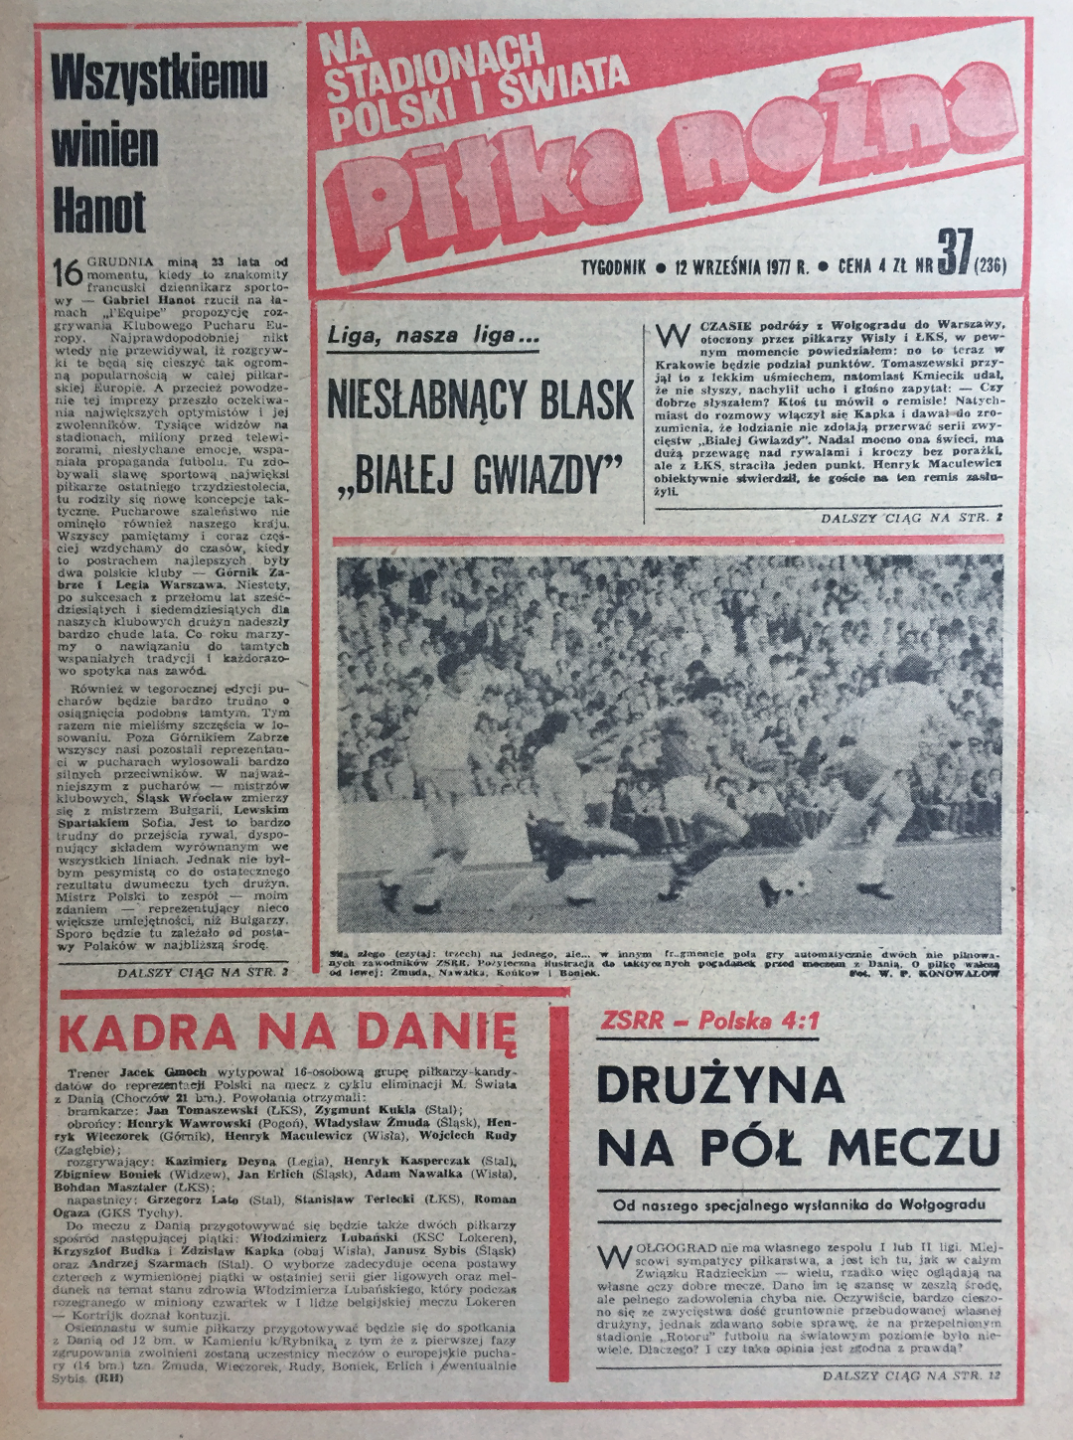 Okładka piłki nożnej po meczu ZSRR - Polska (07.09.1977) 